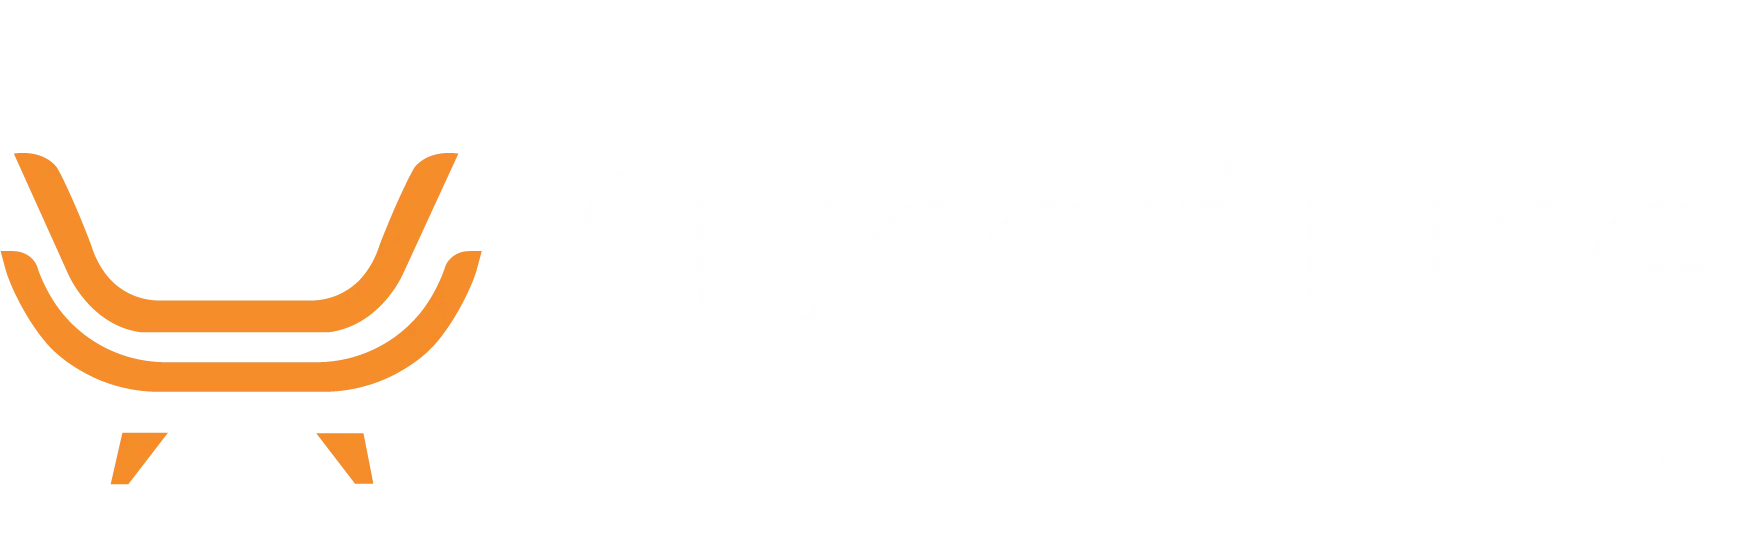 fmp logo